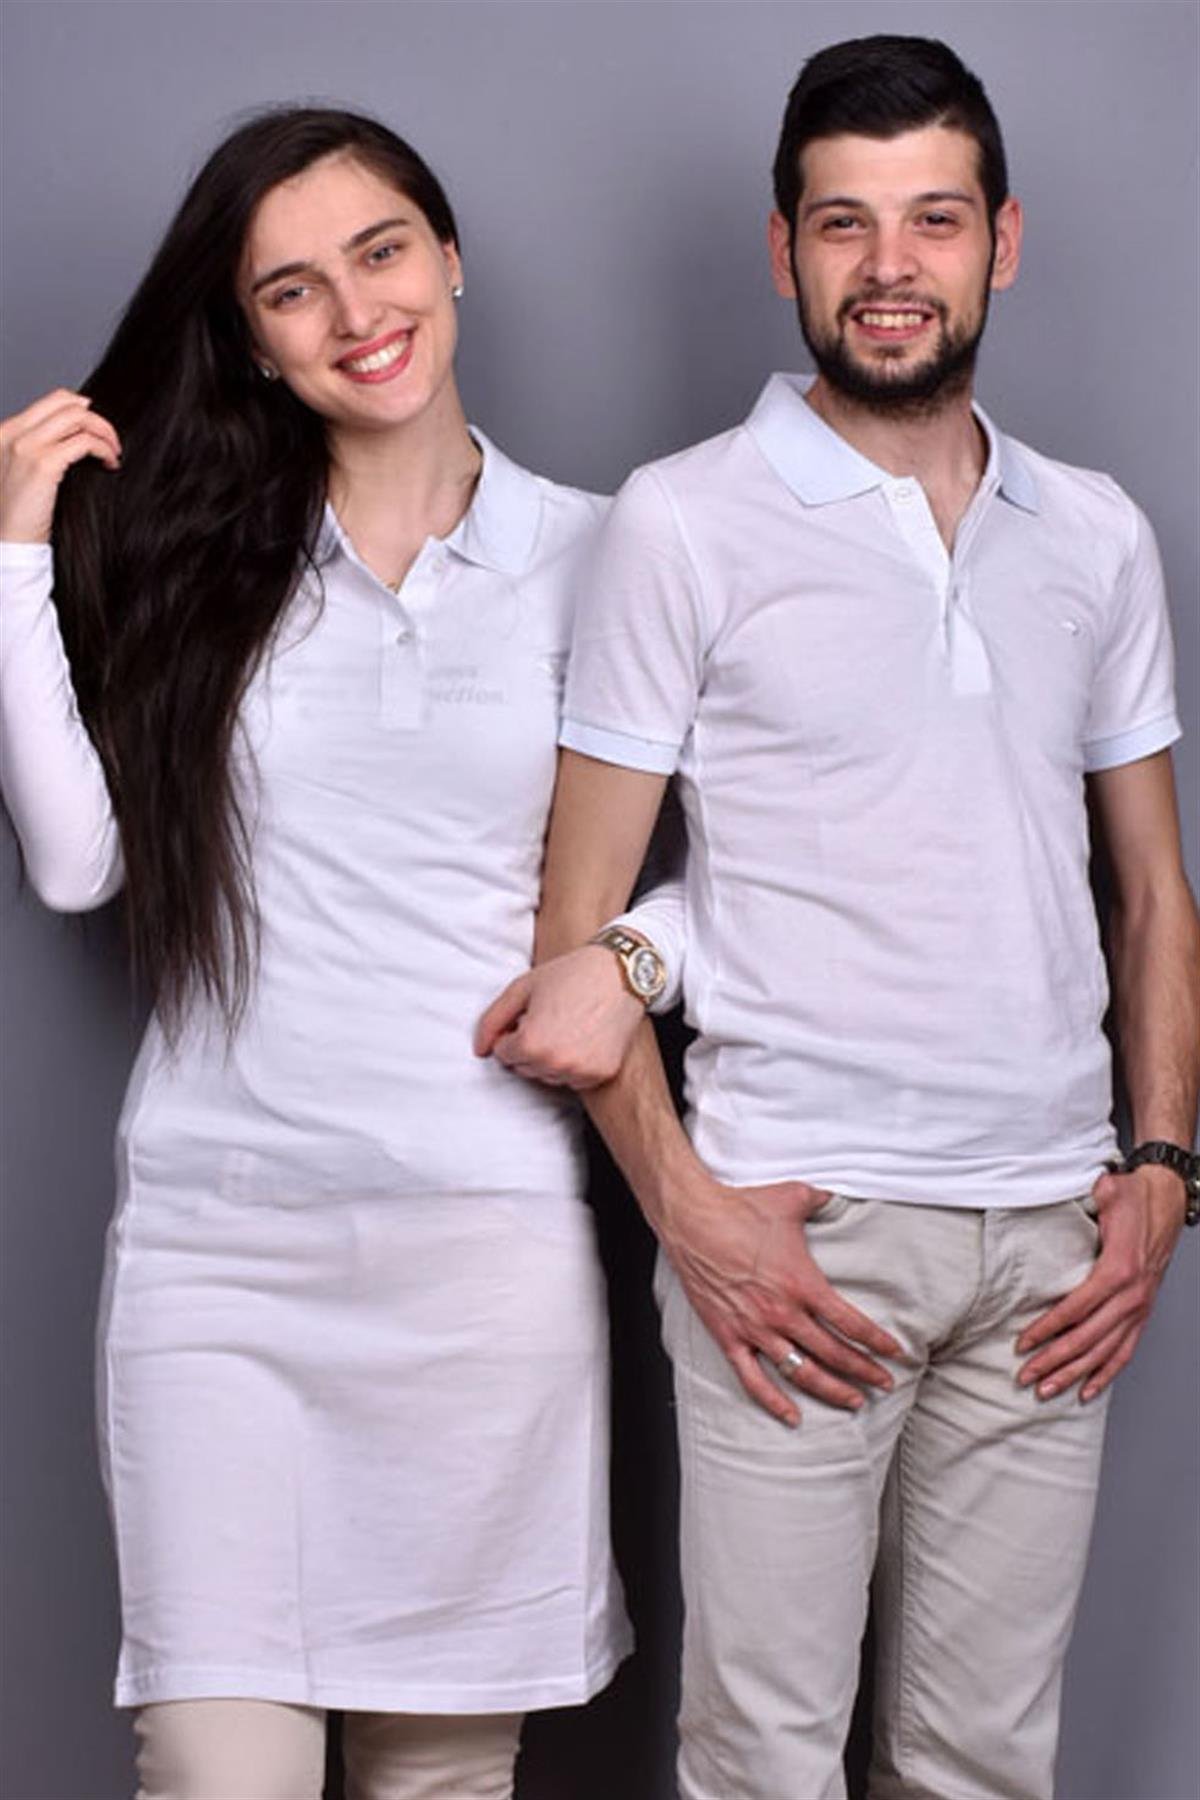 Düz Beyaz Tunik Ve Tişört Sevgili Kombini giygit.com | Bay ve Bayan Giyim  ve Sevgili Kombinleri